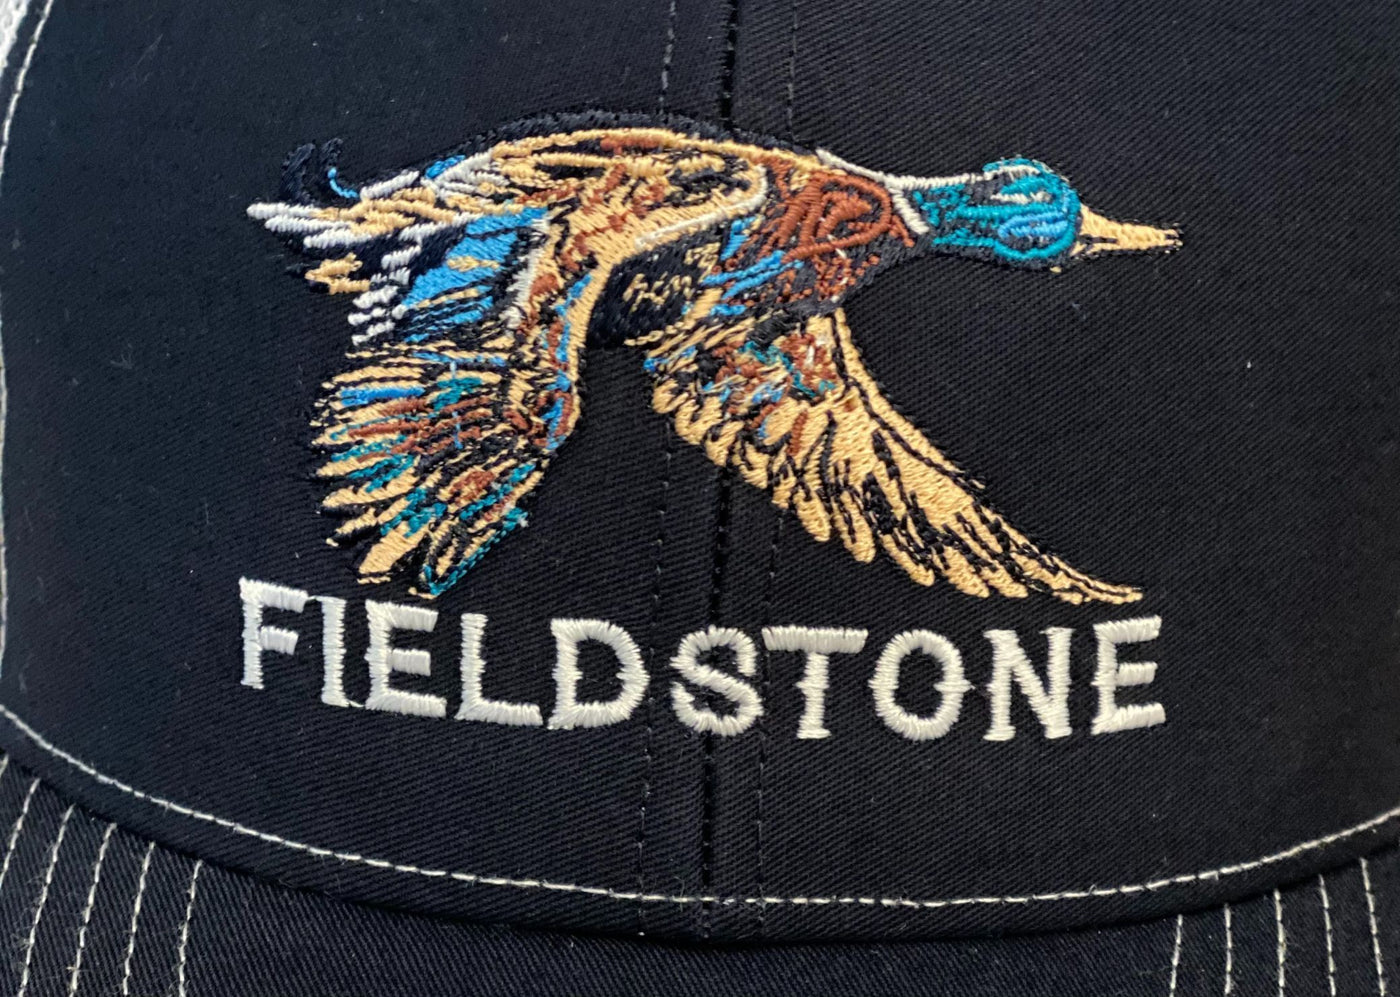 Migration Trucker Hat by Fieldstone Outdoors